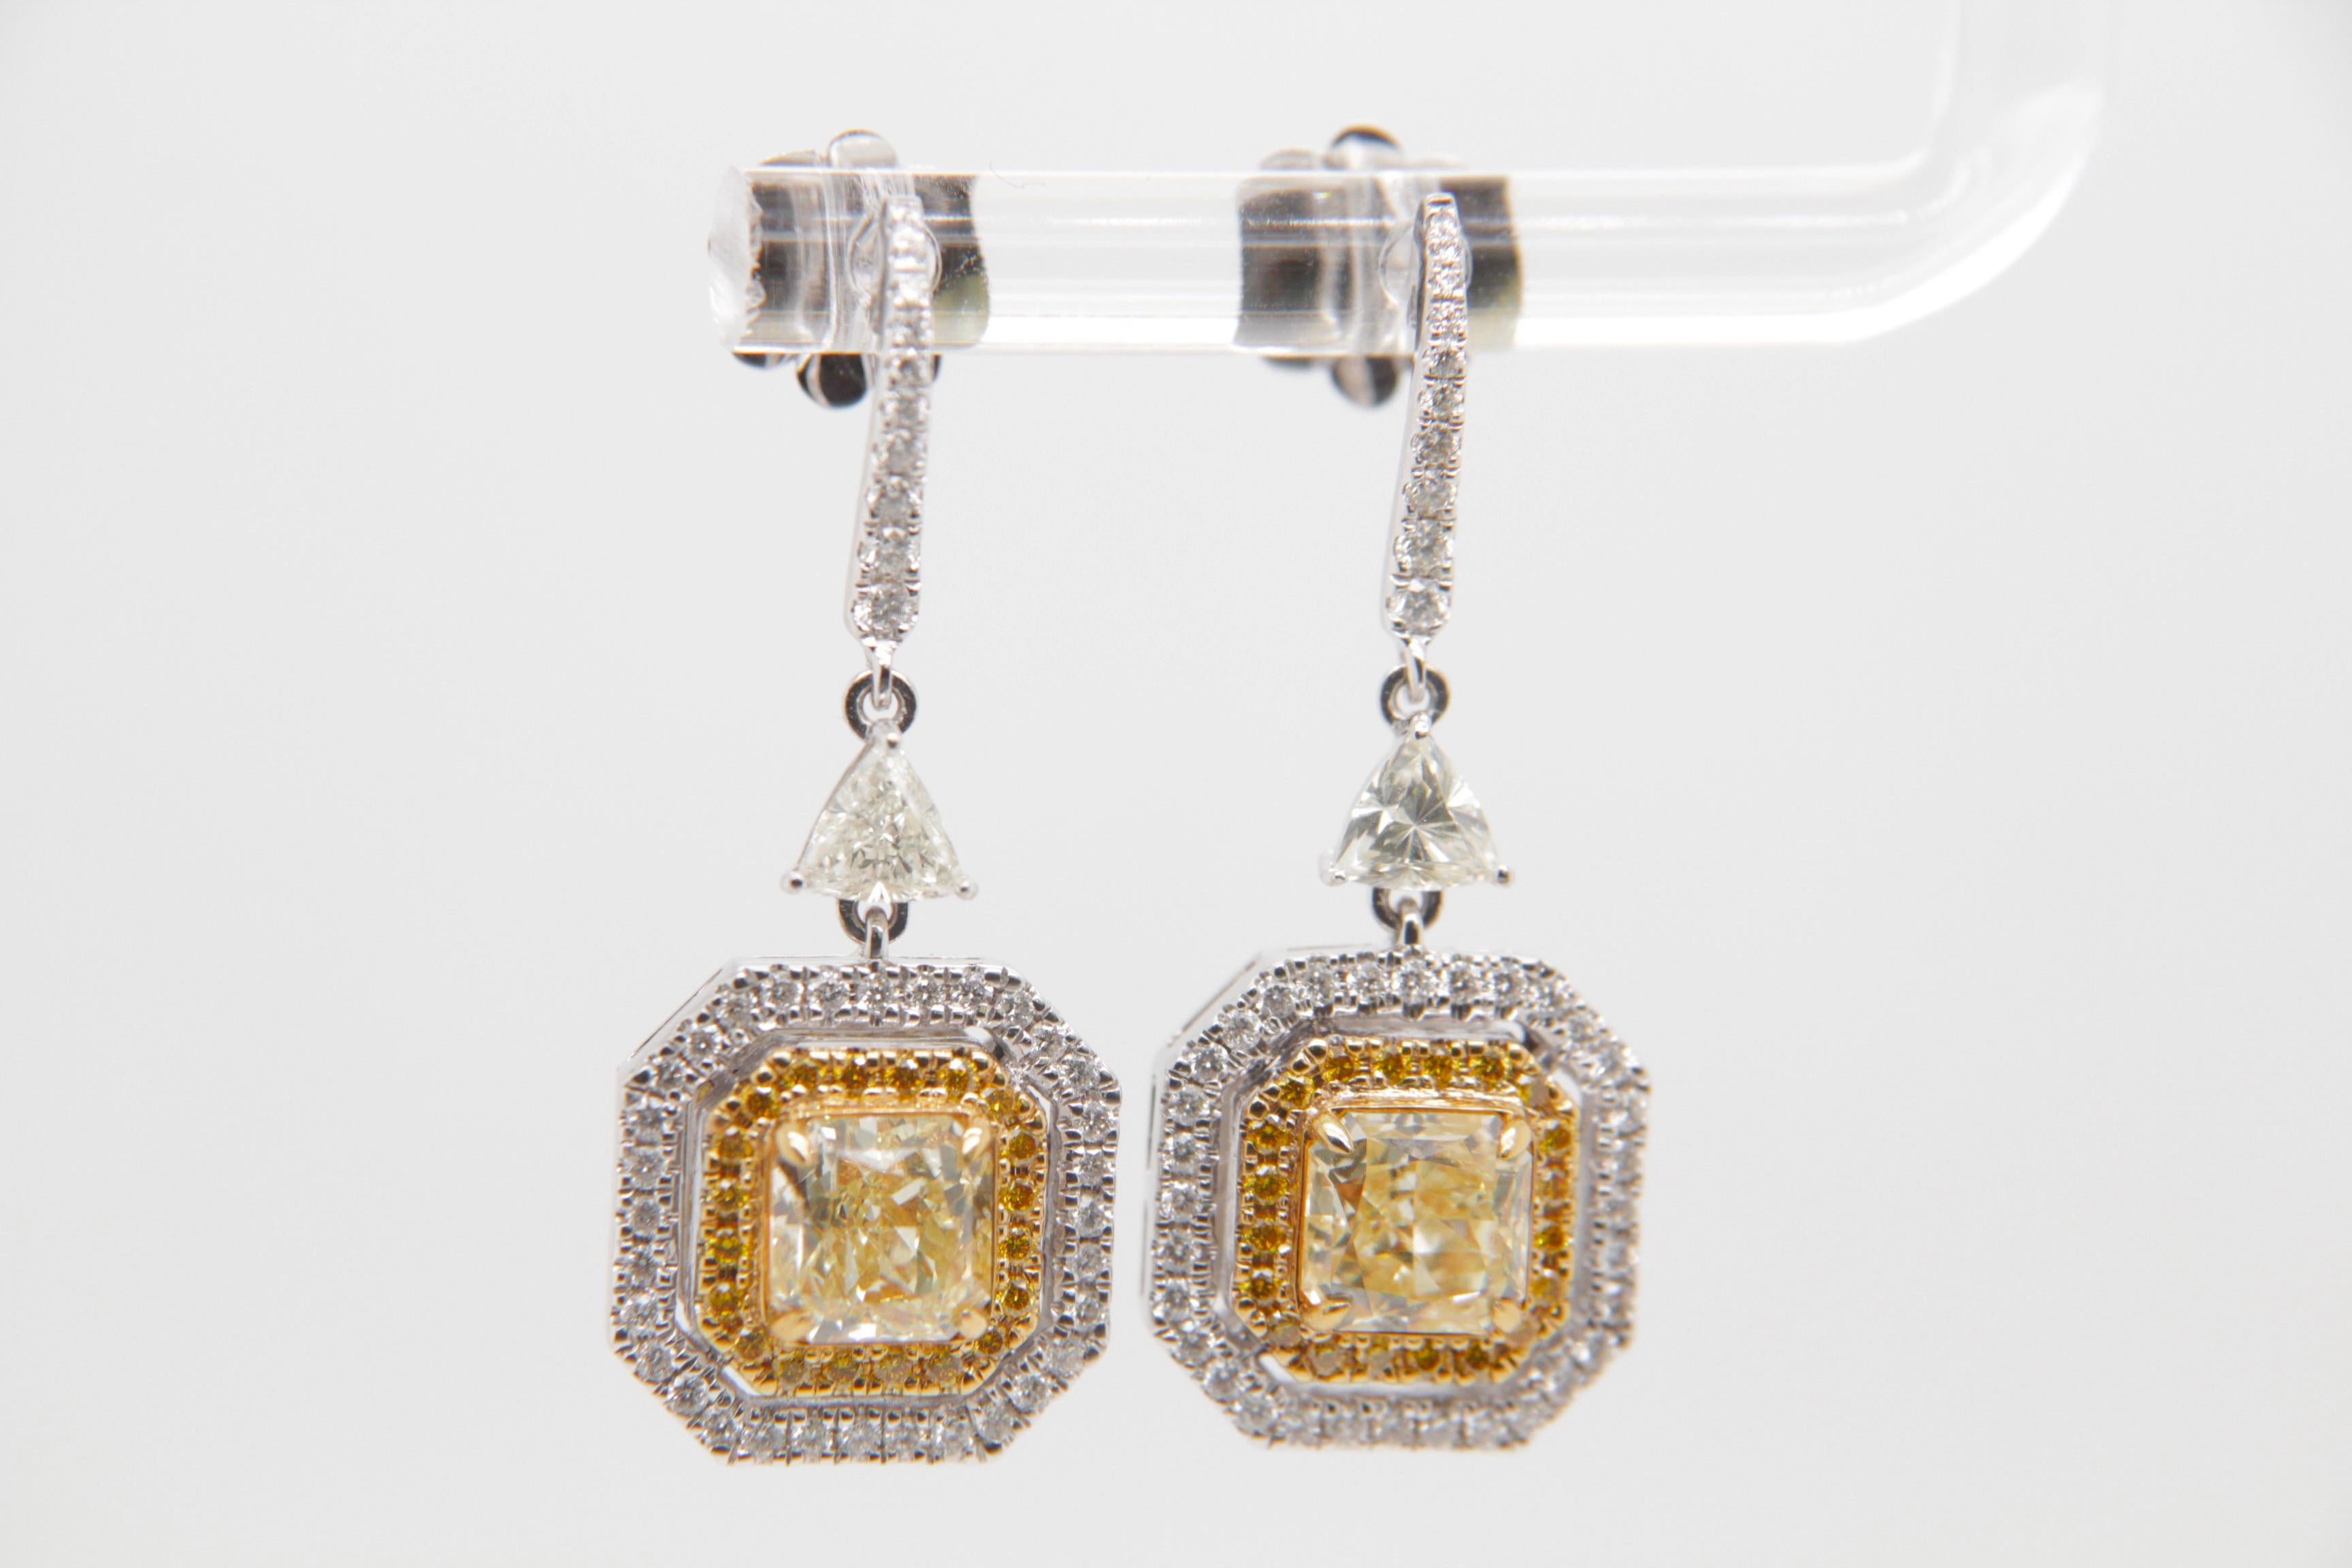 Diese fesselnden Diamantohrringe von REWA Jewelry sind ein faszinierender Ausdruck von zeitloser Eleganz und raffinierter Handwerkskunst.

Das Herzstück dieser Ohrringe sind zwei strahlende Diamanten von insgesamt 2,53 Karat. Die beiden Diamanten